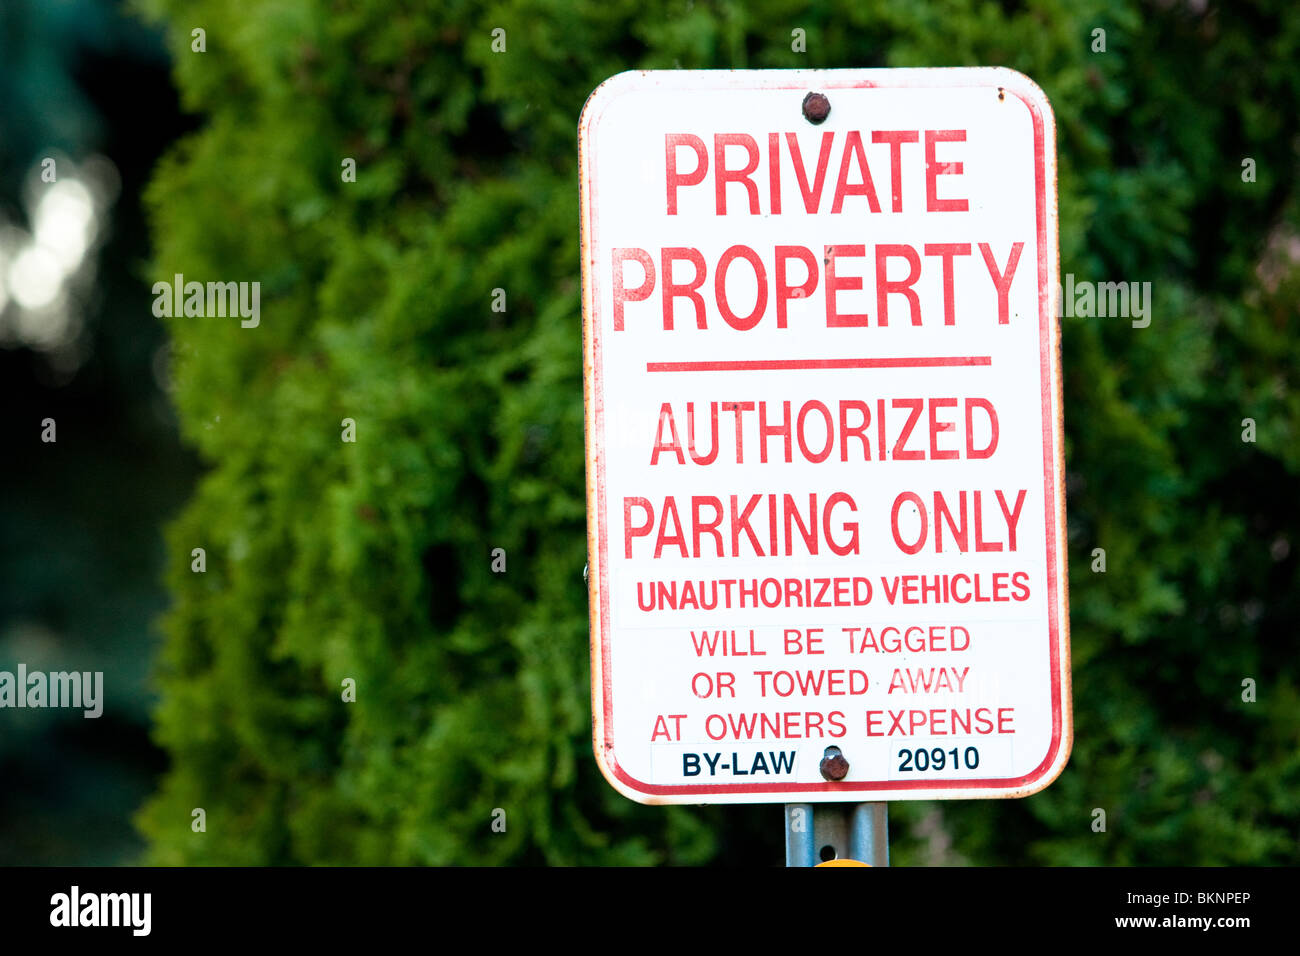 Privateigentum autorisierten Parkplatz nur Zeichen, die nicht autorisierte Fahrzeuge werden markiert oder abgeschleppt auf Kosten der Eigentümer Stockfoto